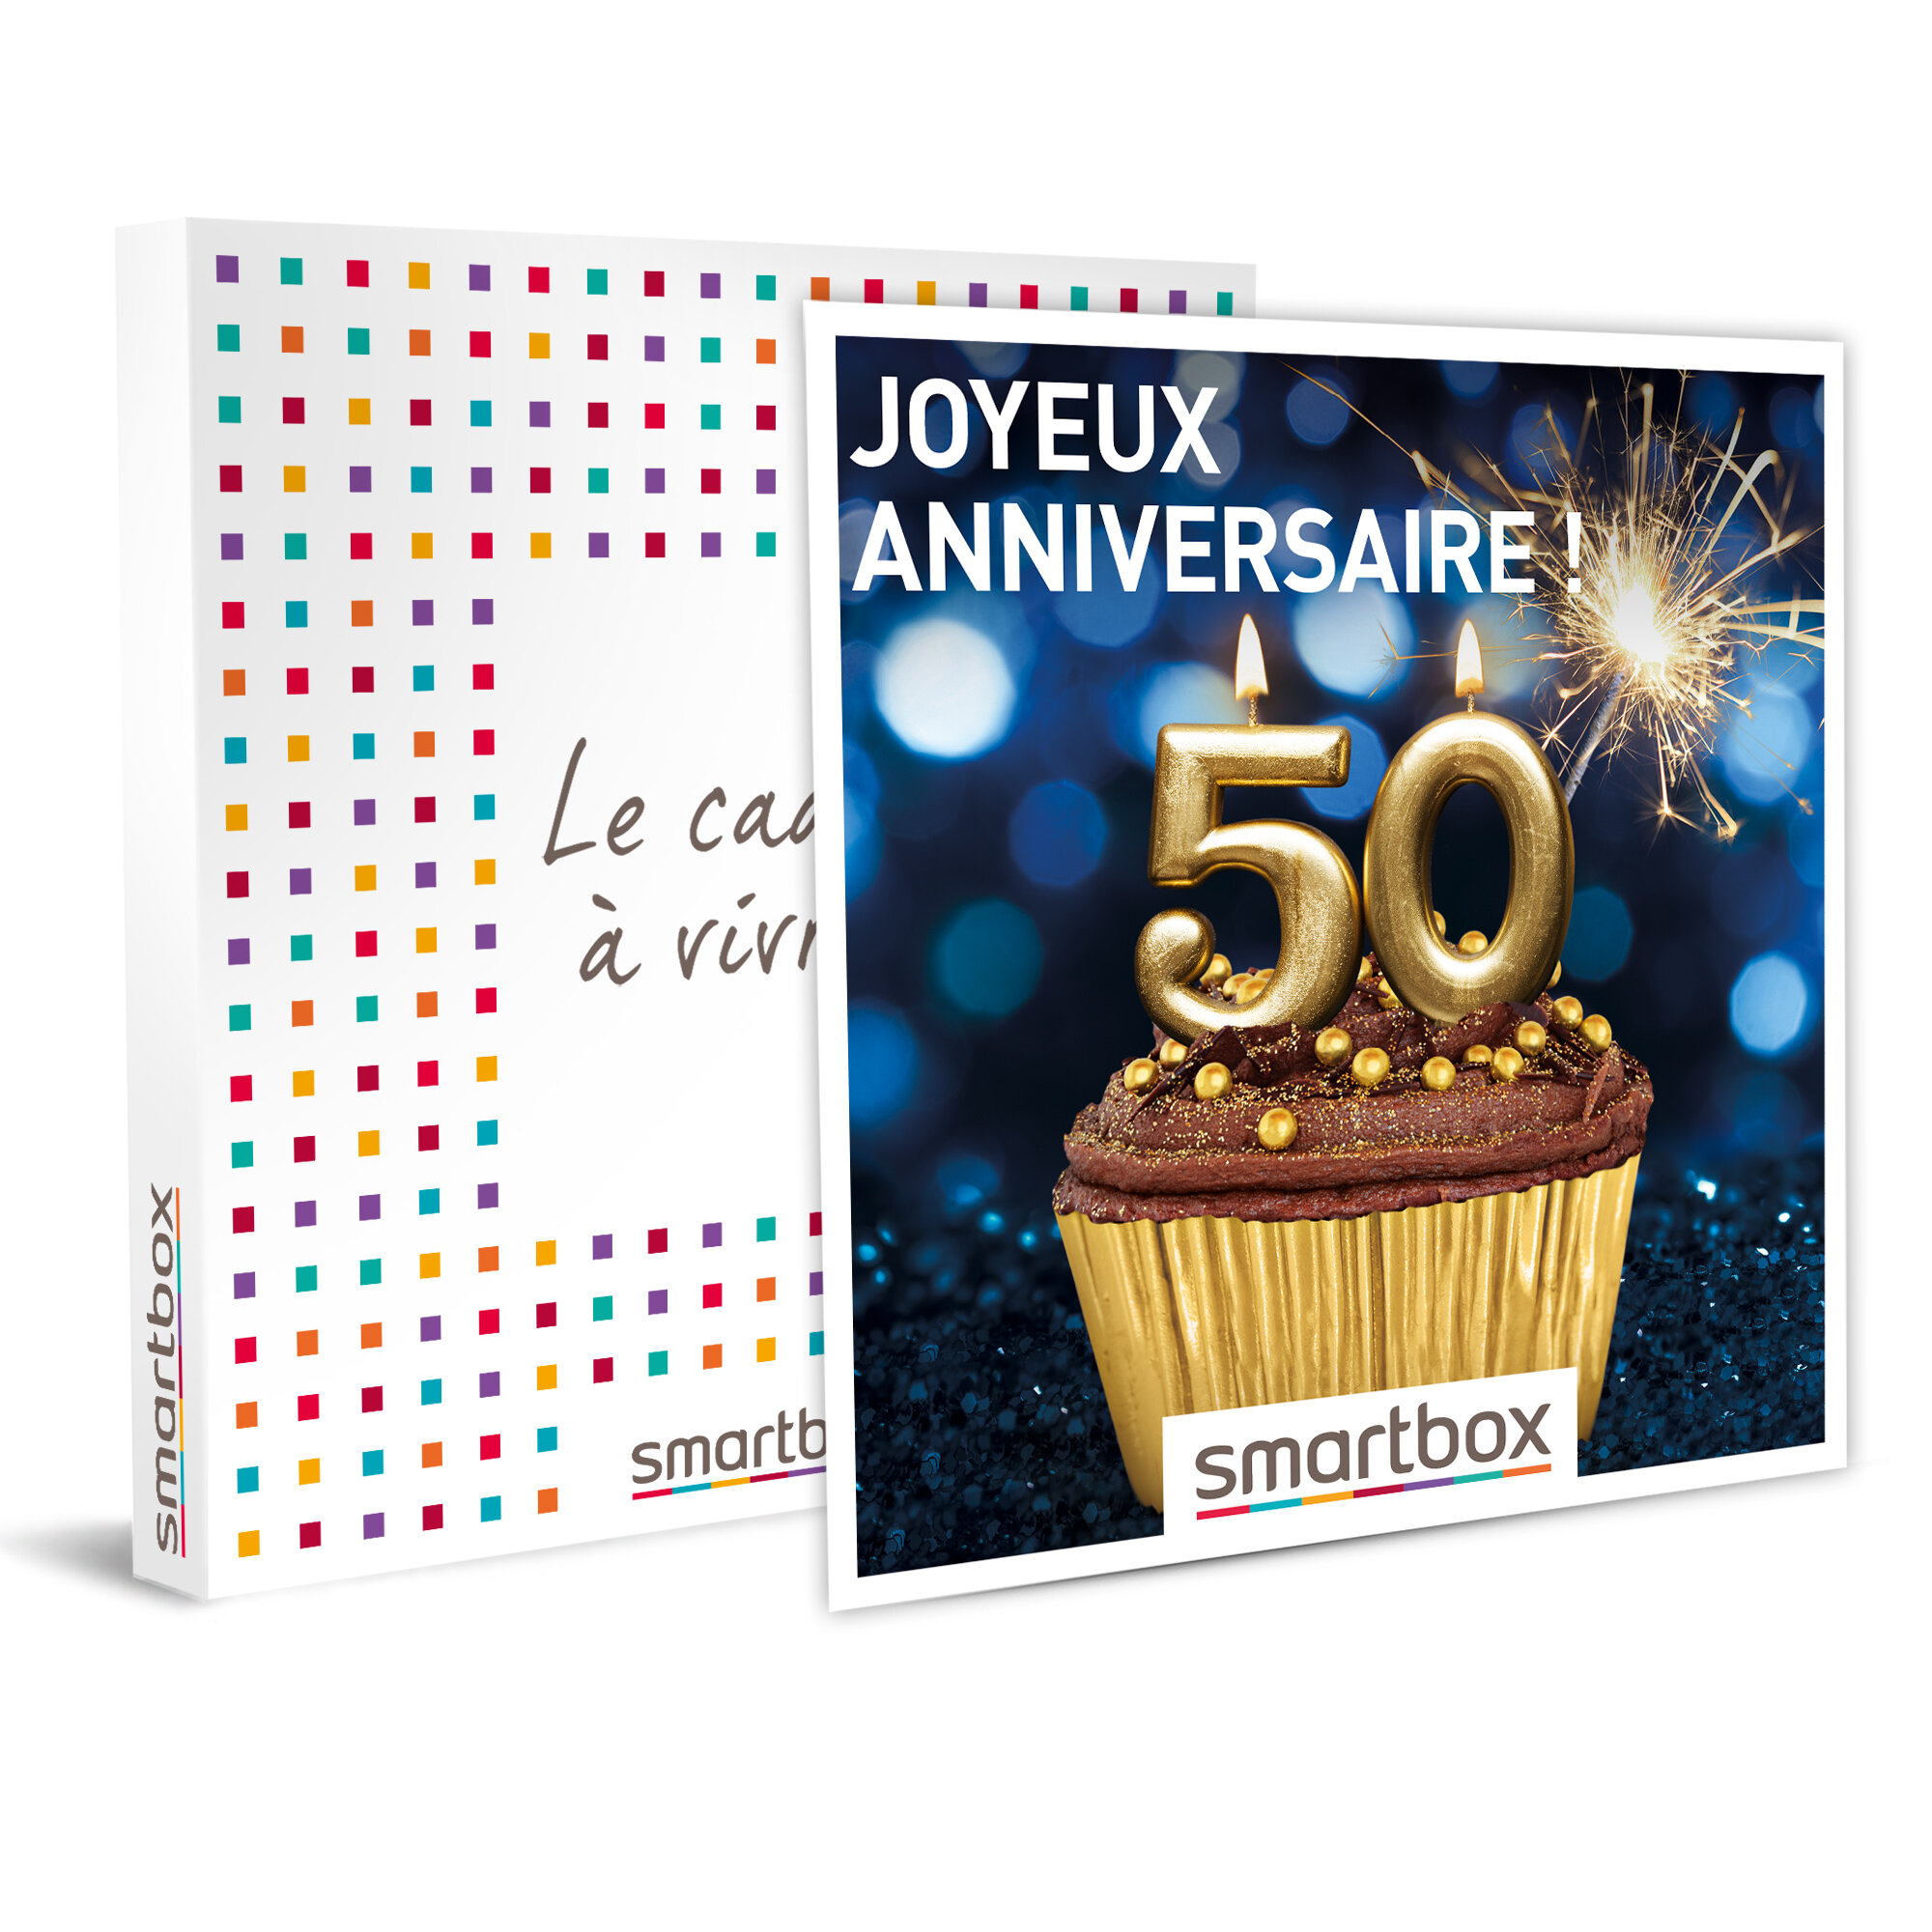 Smartbox Coffret Cadeau Joyeux Anniversaire Pour Homme 50 Ans 4718 Escapades Repas Seances De Bien Etre Et Aventures Sport Cdiscount Au Quotidien